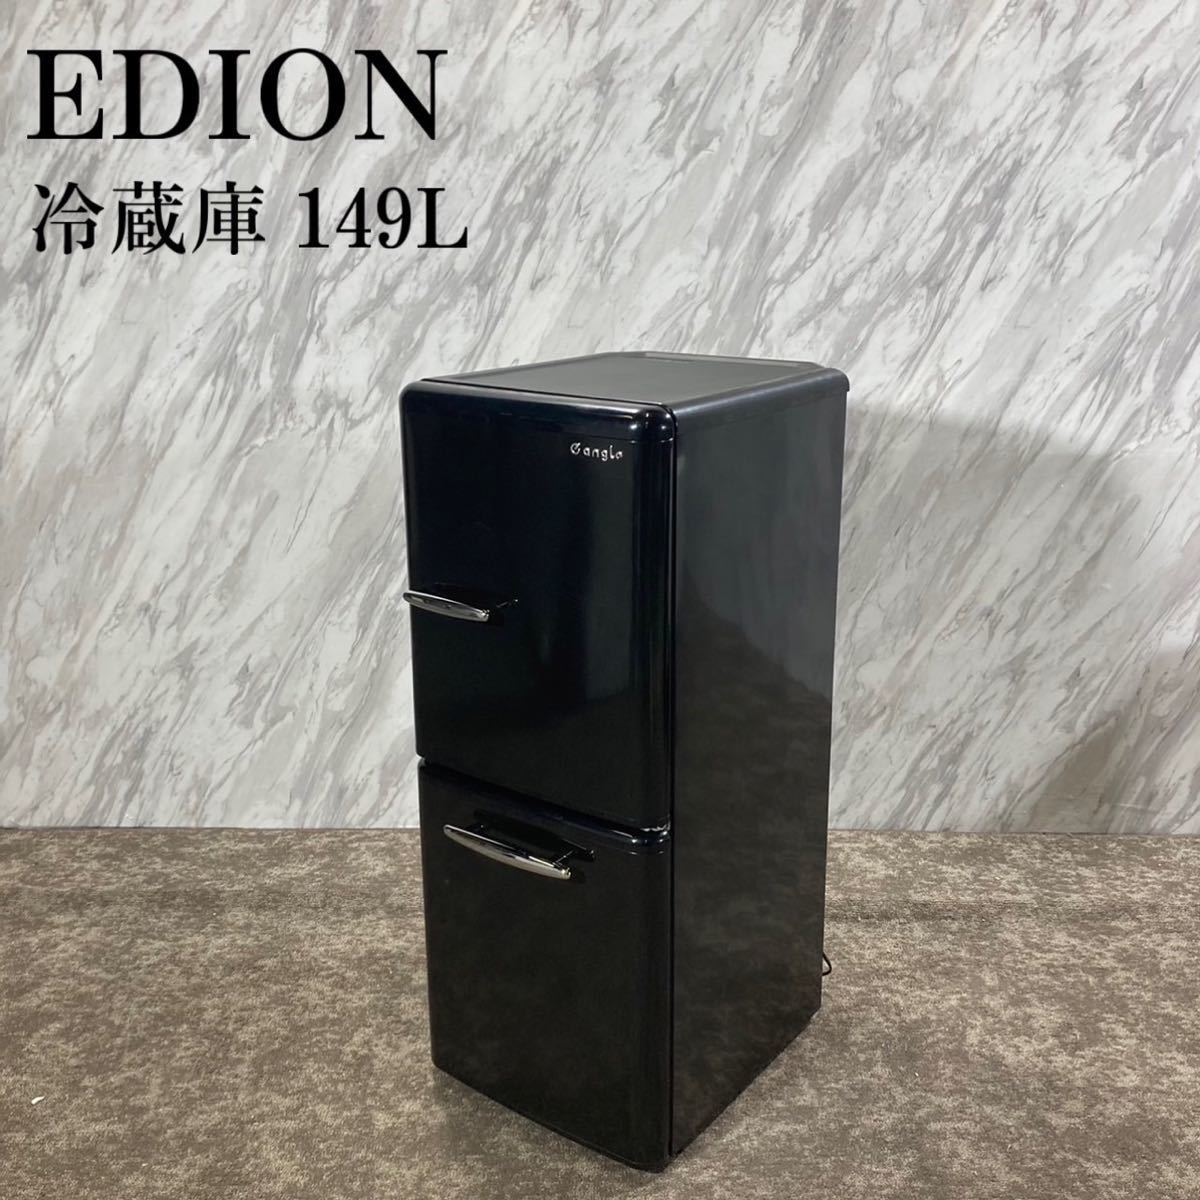 EDION エディオン 冷蔵庫 ANG-RE151-A1 149L J427-